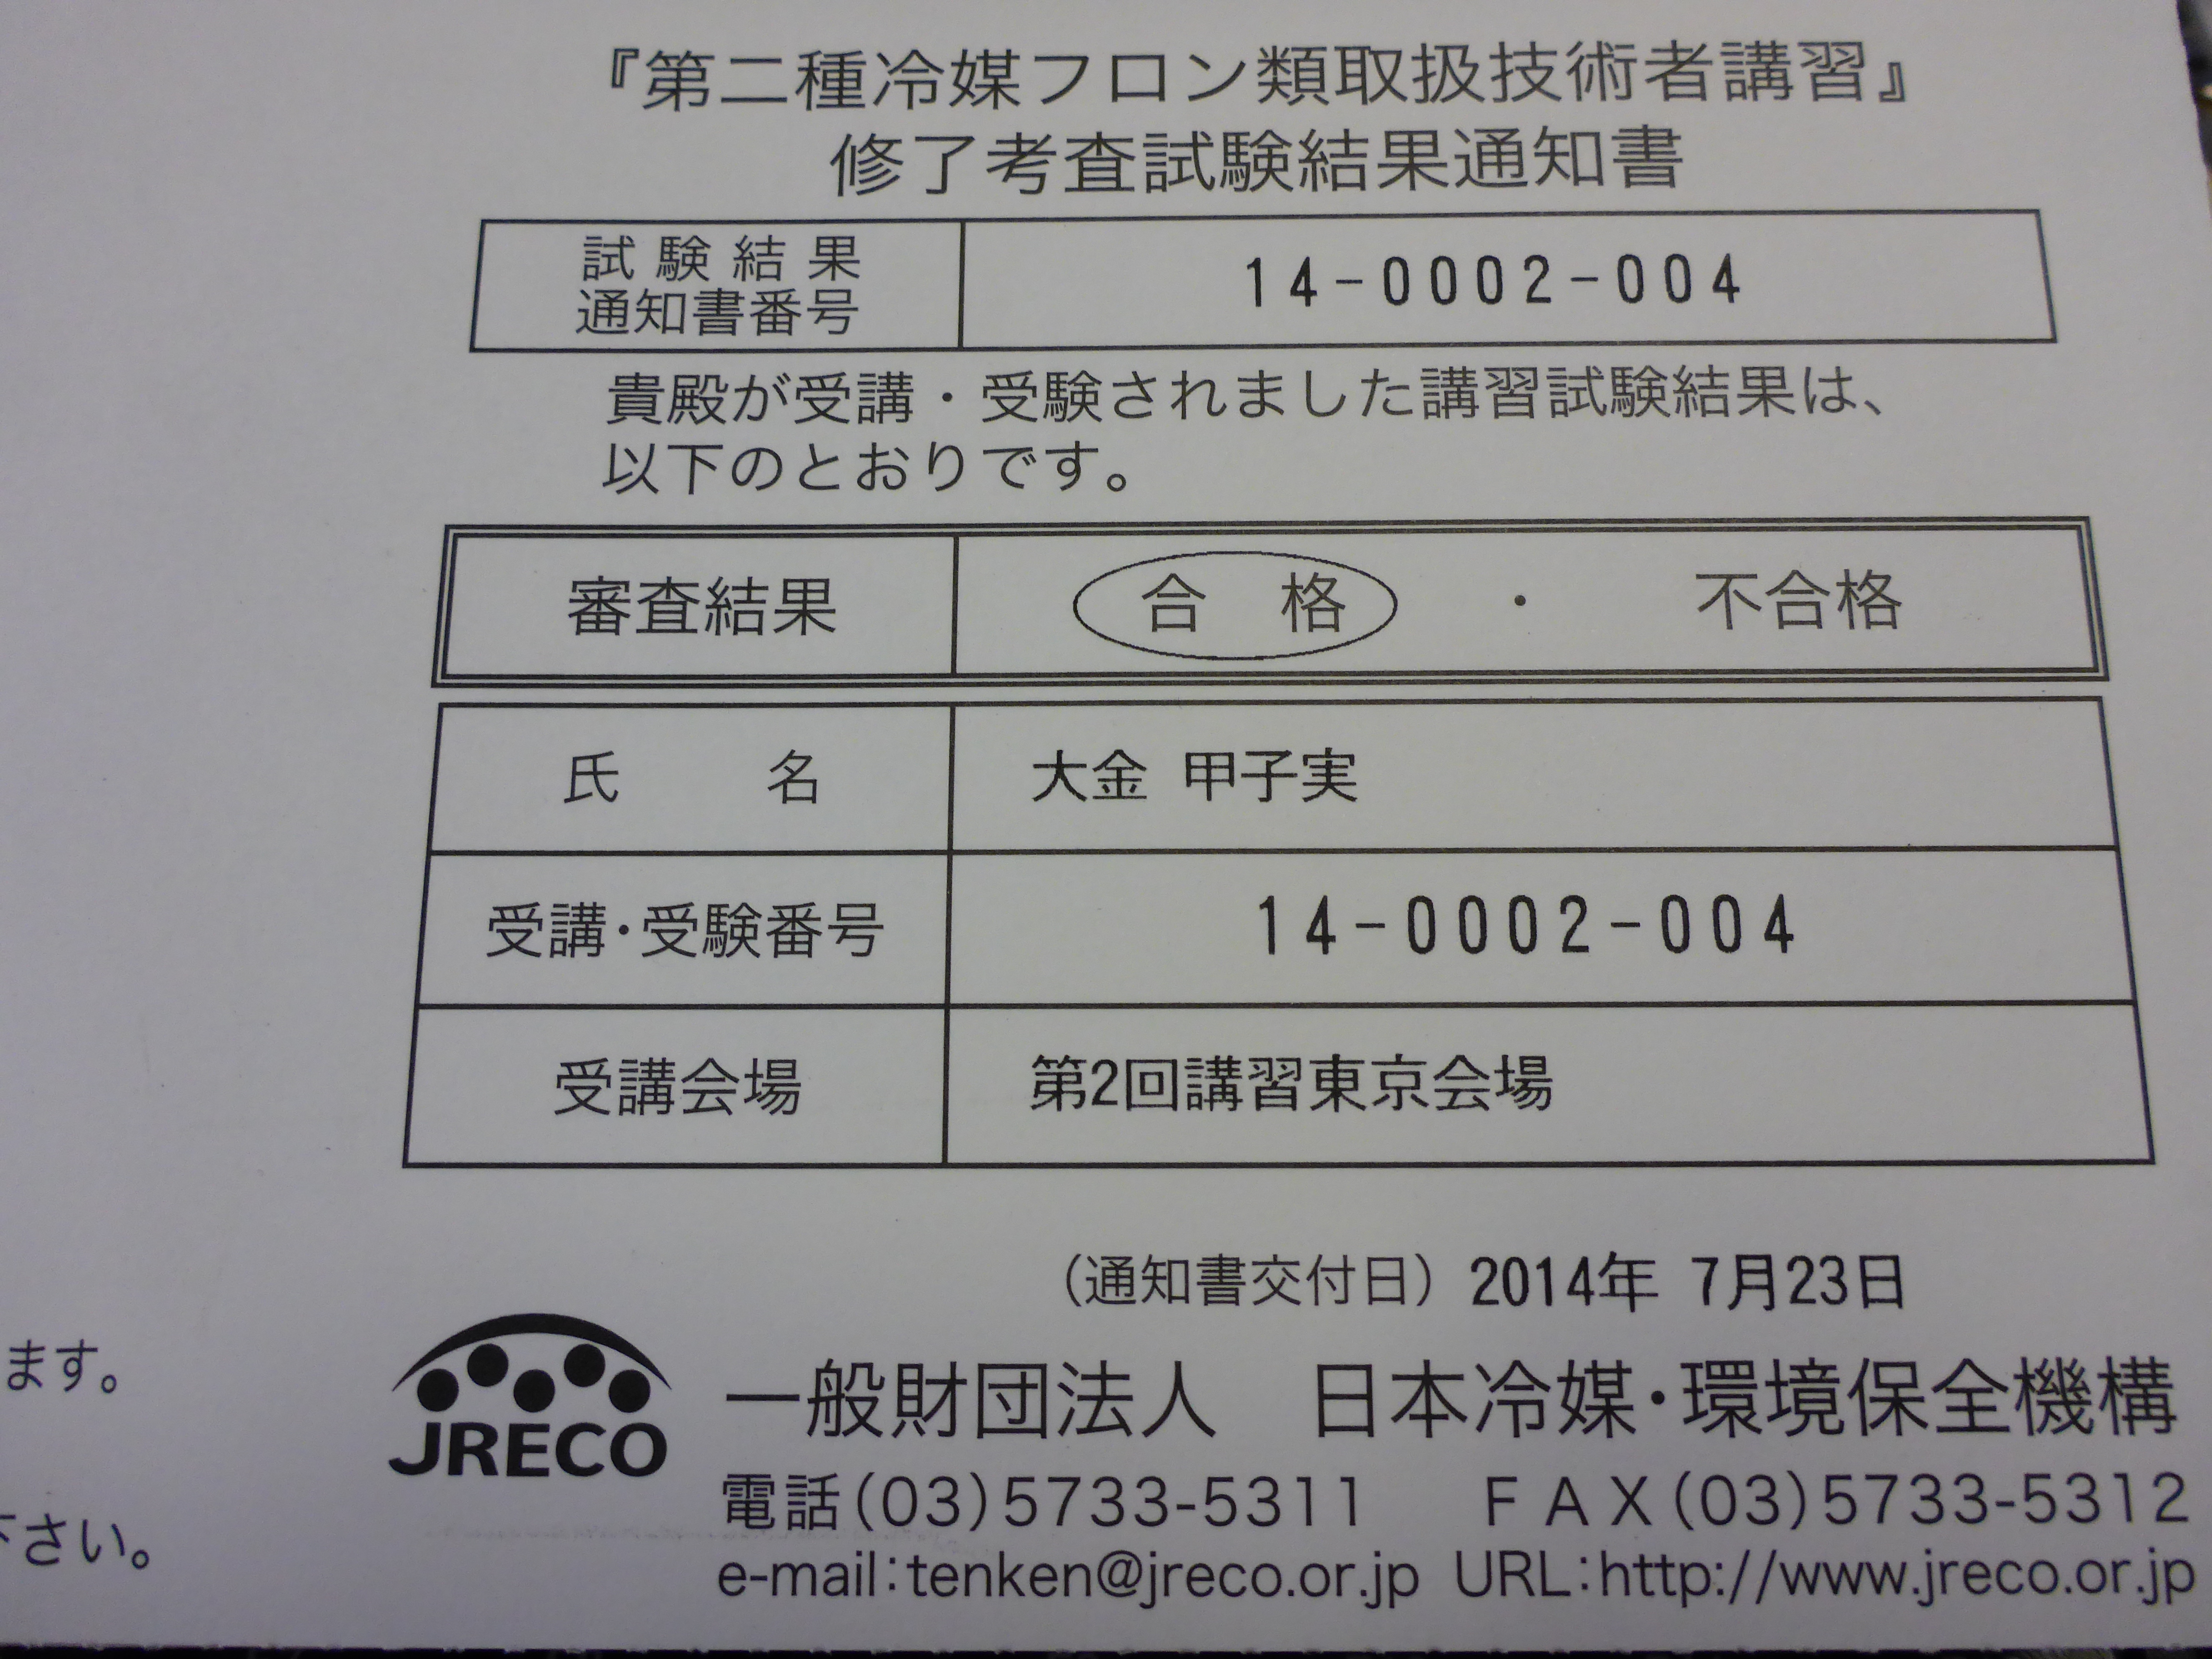 二 類 冷媒 取扱 者 フロン 技術 第 種 第二種冷媒フロン類取扱技術者の皆さまへ/一般財団法人 日本冷媒・環境保全機構